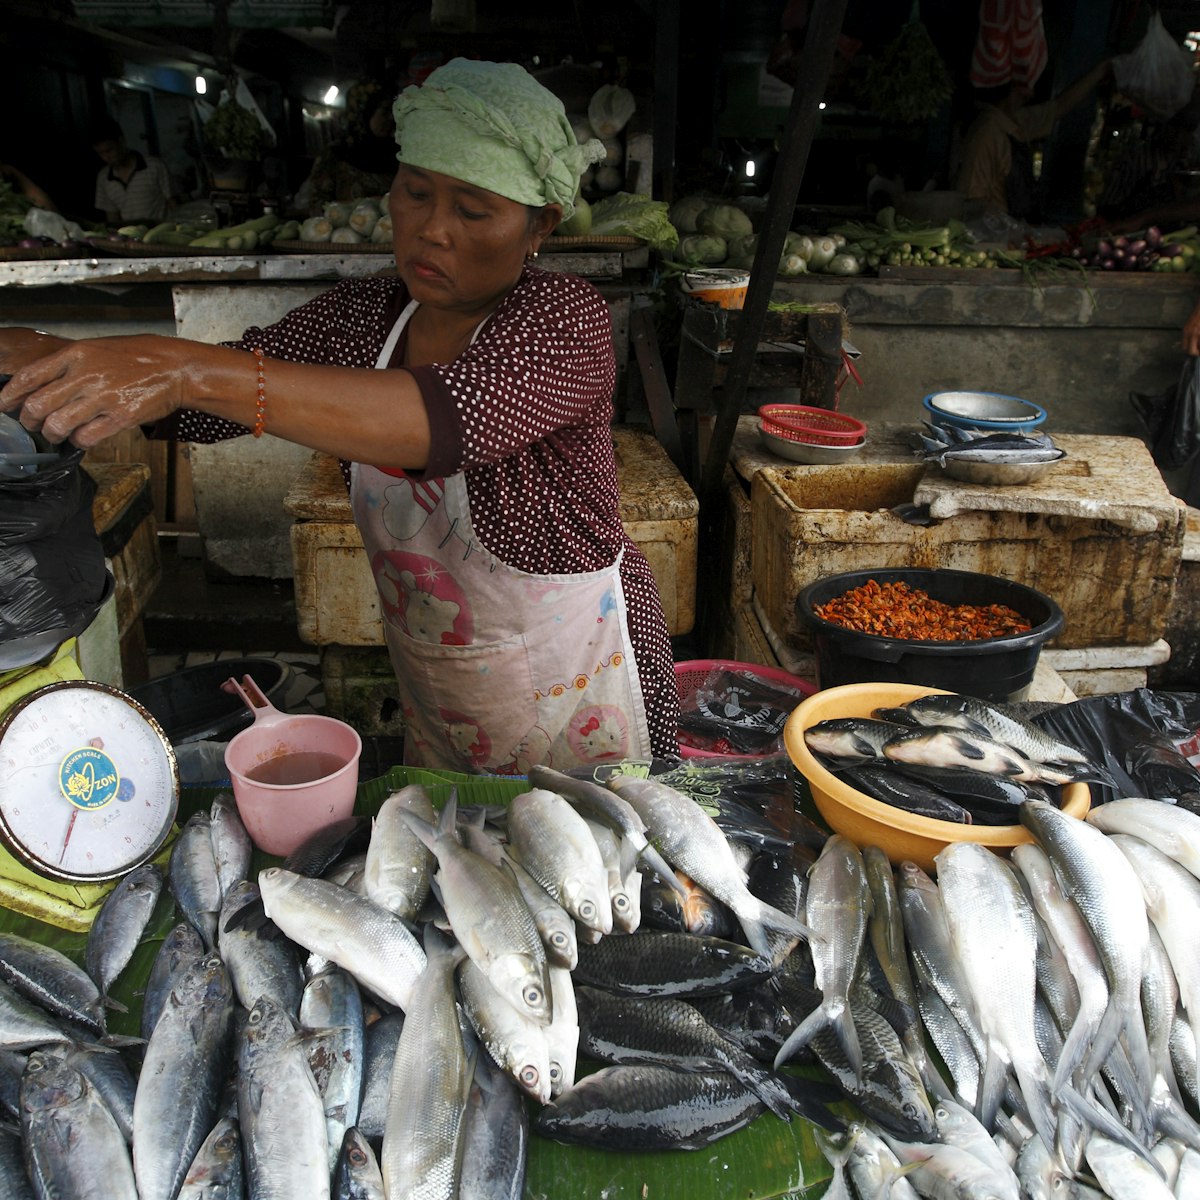 Vendor selling fish at Pasar Ikan fish market, Sunda Kelapa.